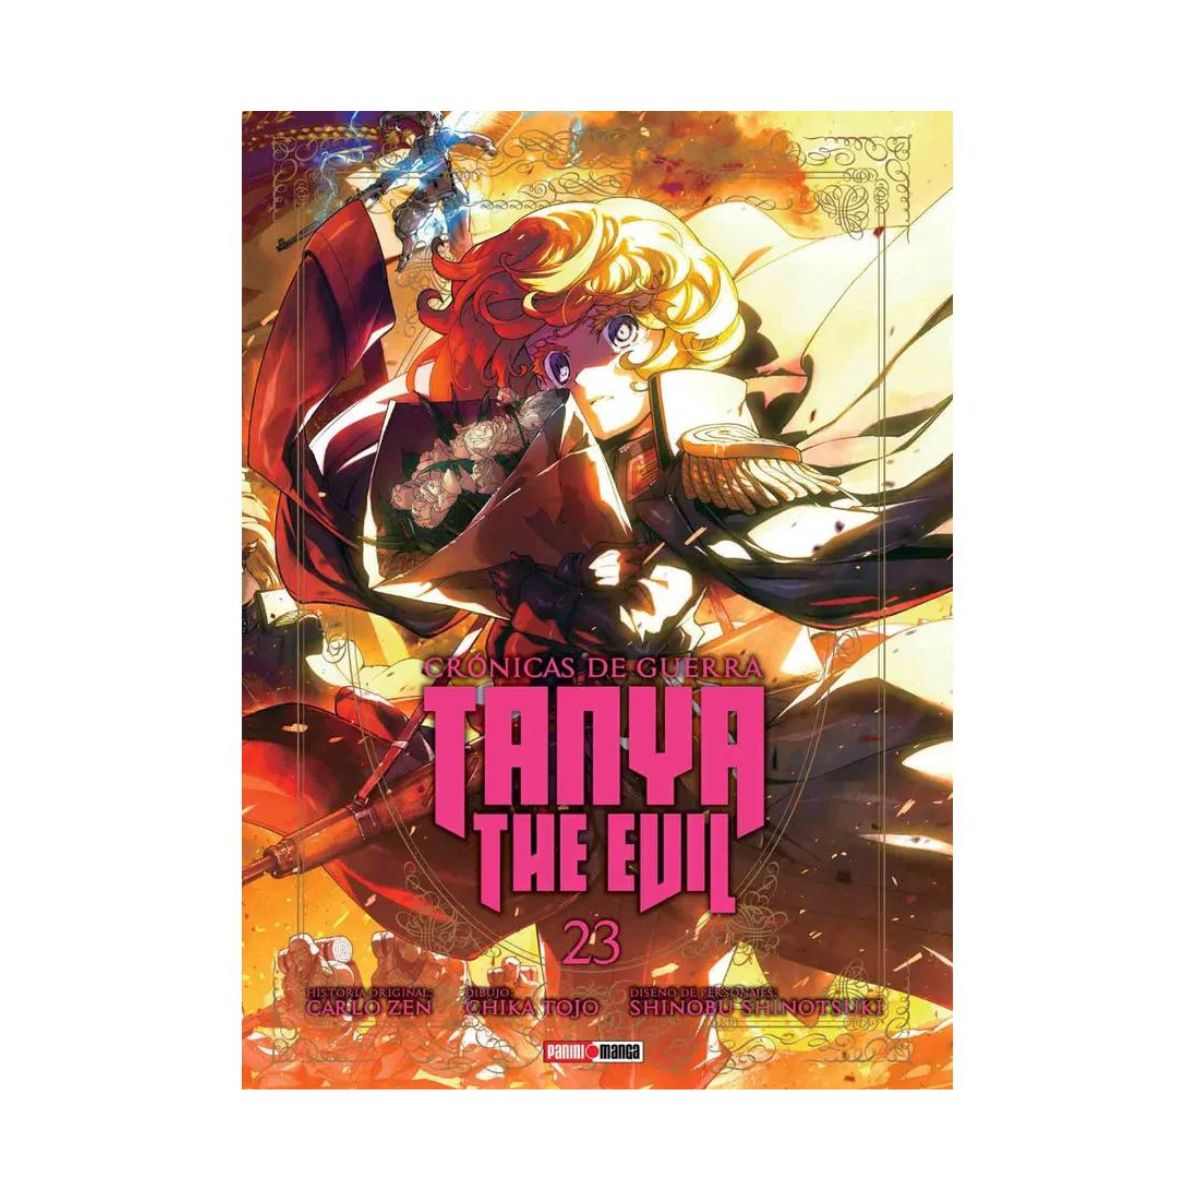 Tanya The Evil Manga Panini Cronicas De Guerra Tomo A Elegir - MarchanteMX